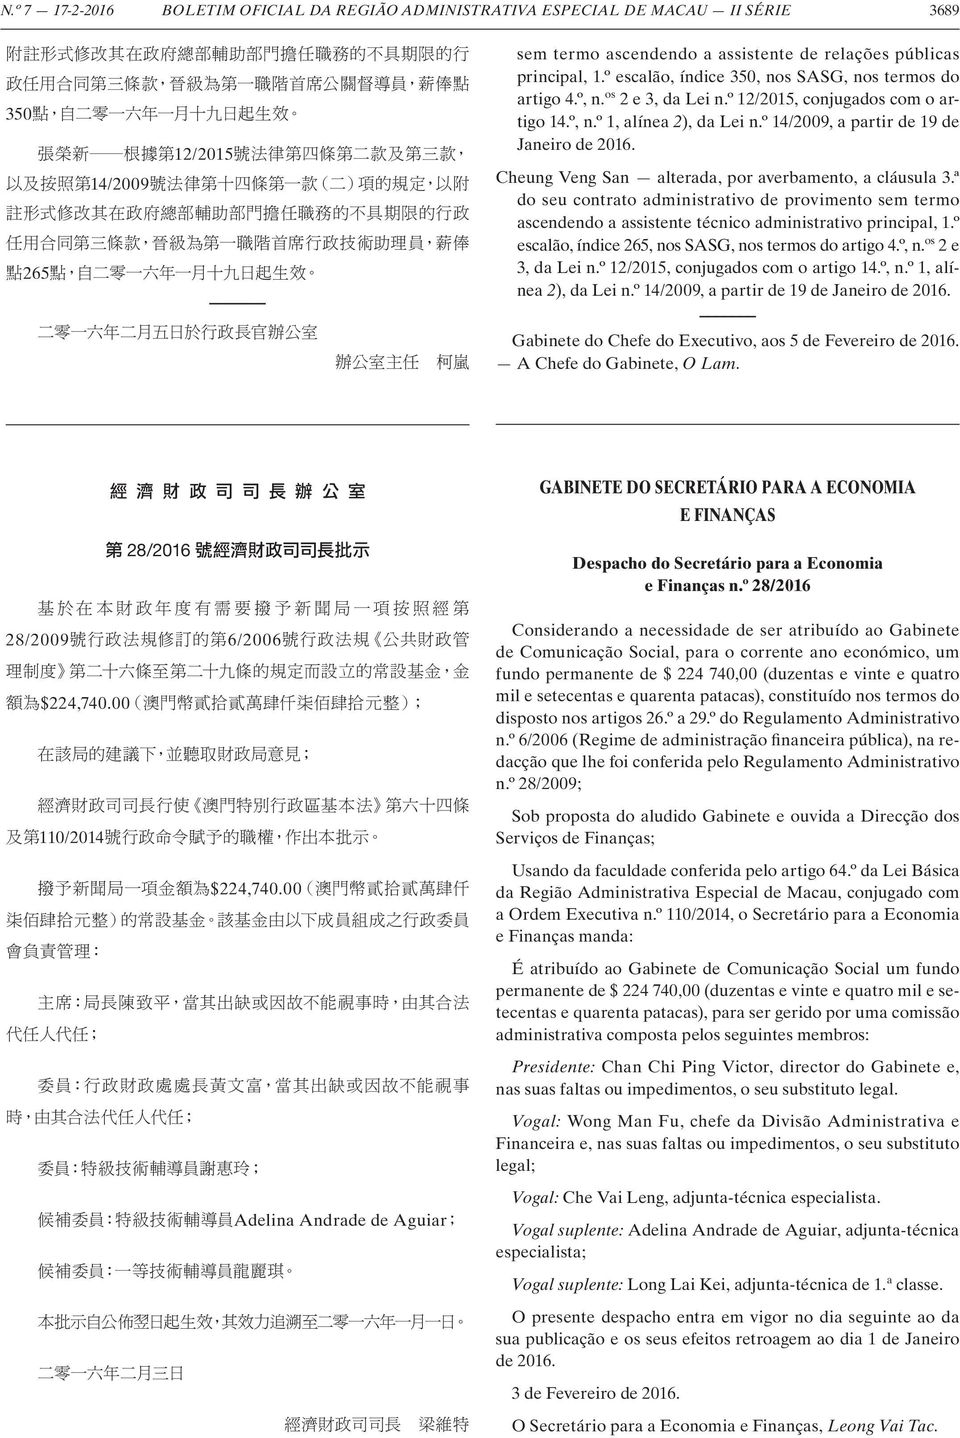 Cheung Veng San alterada, por averbamento, a cláusula 3.ª do seu contrato administrativo de provimento sem termo ascendendo a assistente técnico administrativo principal, 1.